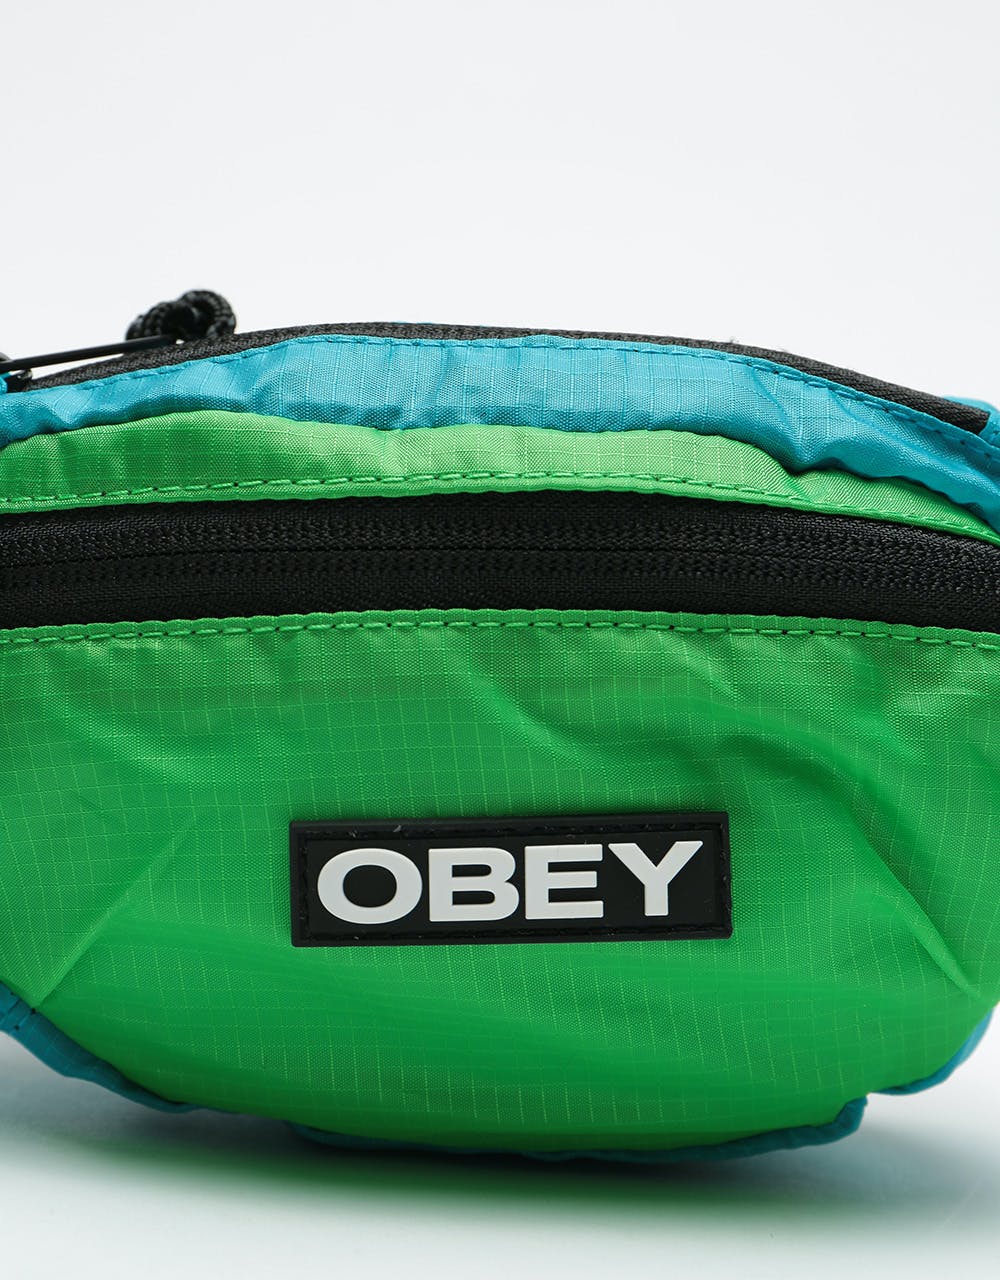 Obey Commuter Waist Cross Body Bag - Sky Blue/Multi